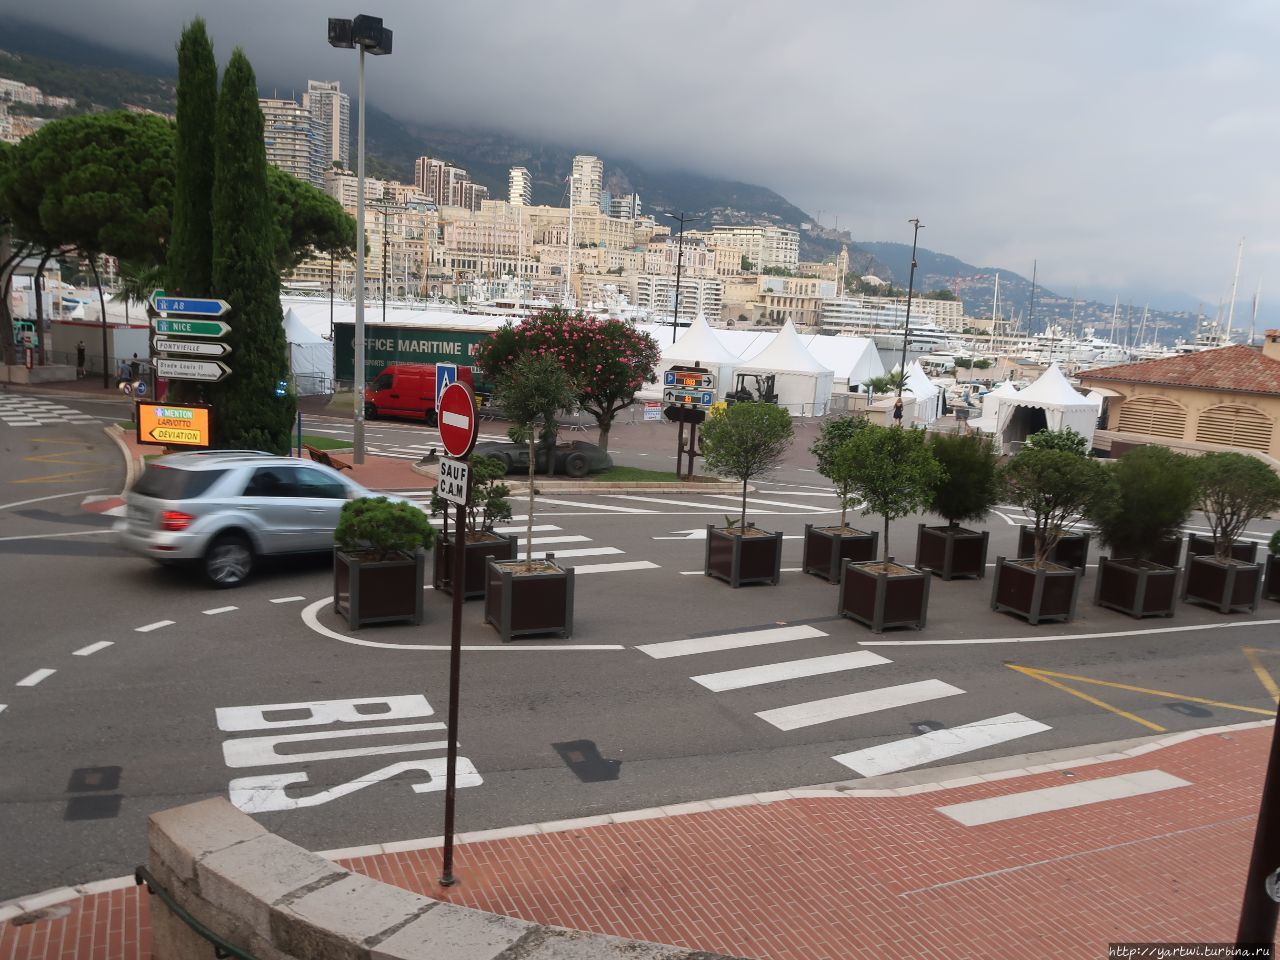 Путь к Монте-Карло пролегает по городской трассе, которая используется для гонки Формулы-1 Гран-при Монако. Вдоль трассы имеются памятники напоминающие, что здесь каждый поворот — легенда. Монако